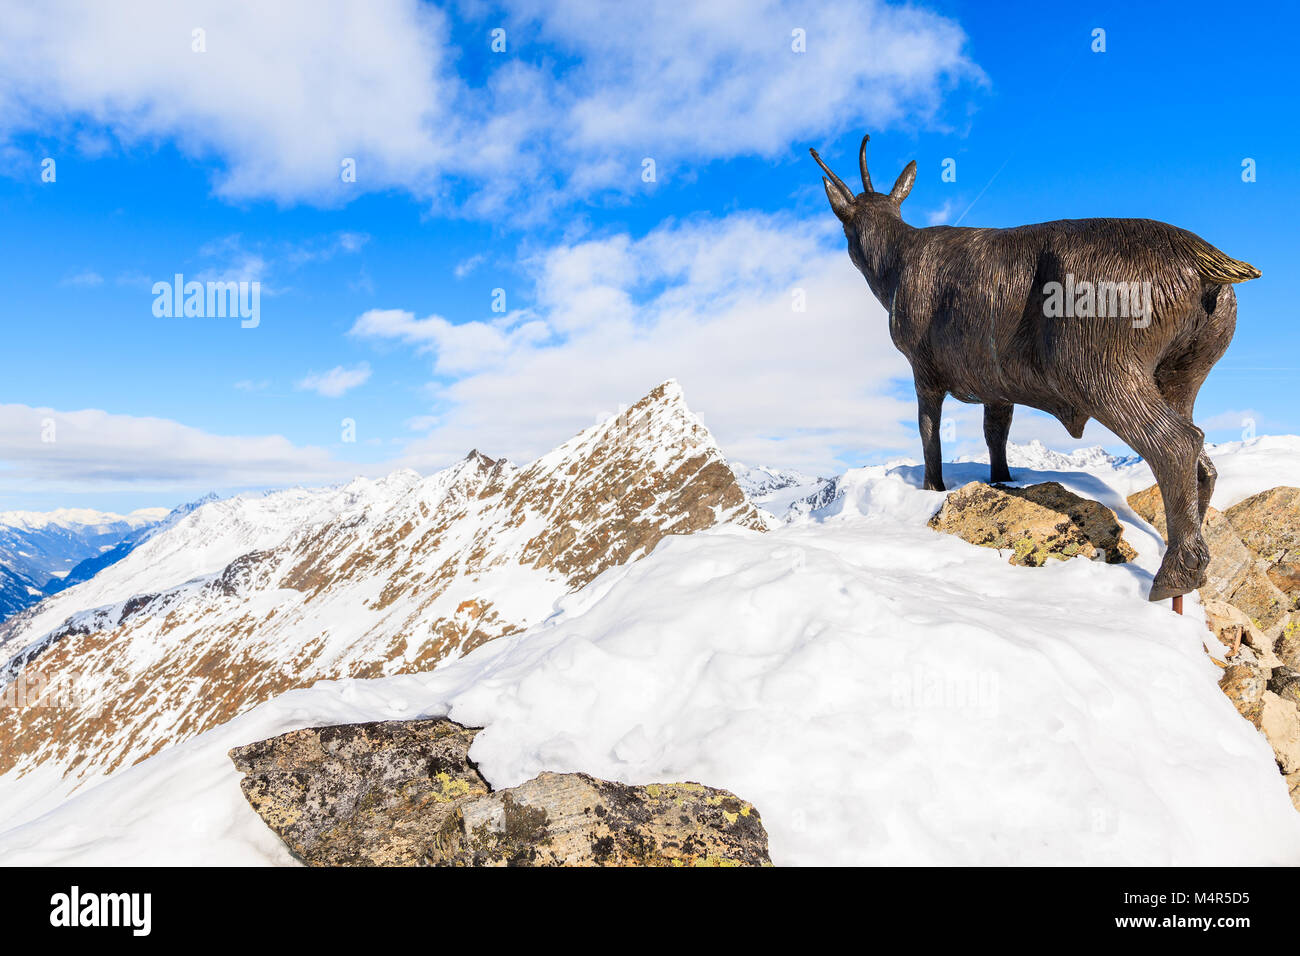 HOCHGURGL - Skigebiet Obergurgl, Österreich - Jan 31, 2018: Chamois Skulptur auf Rock im Winter im Skigebiet Hochgurgl-Obergurgl, Tirol, Austri Stockfoto